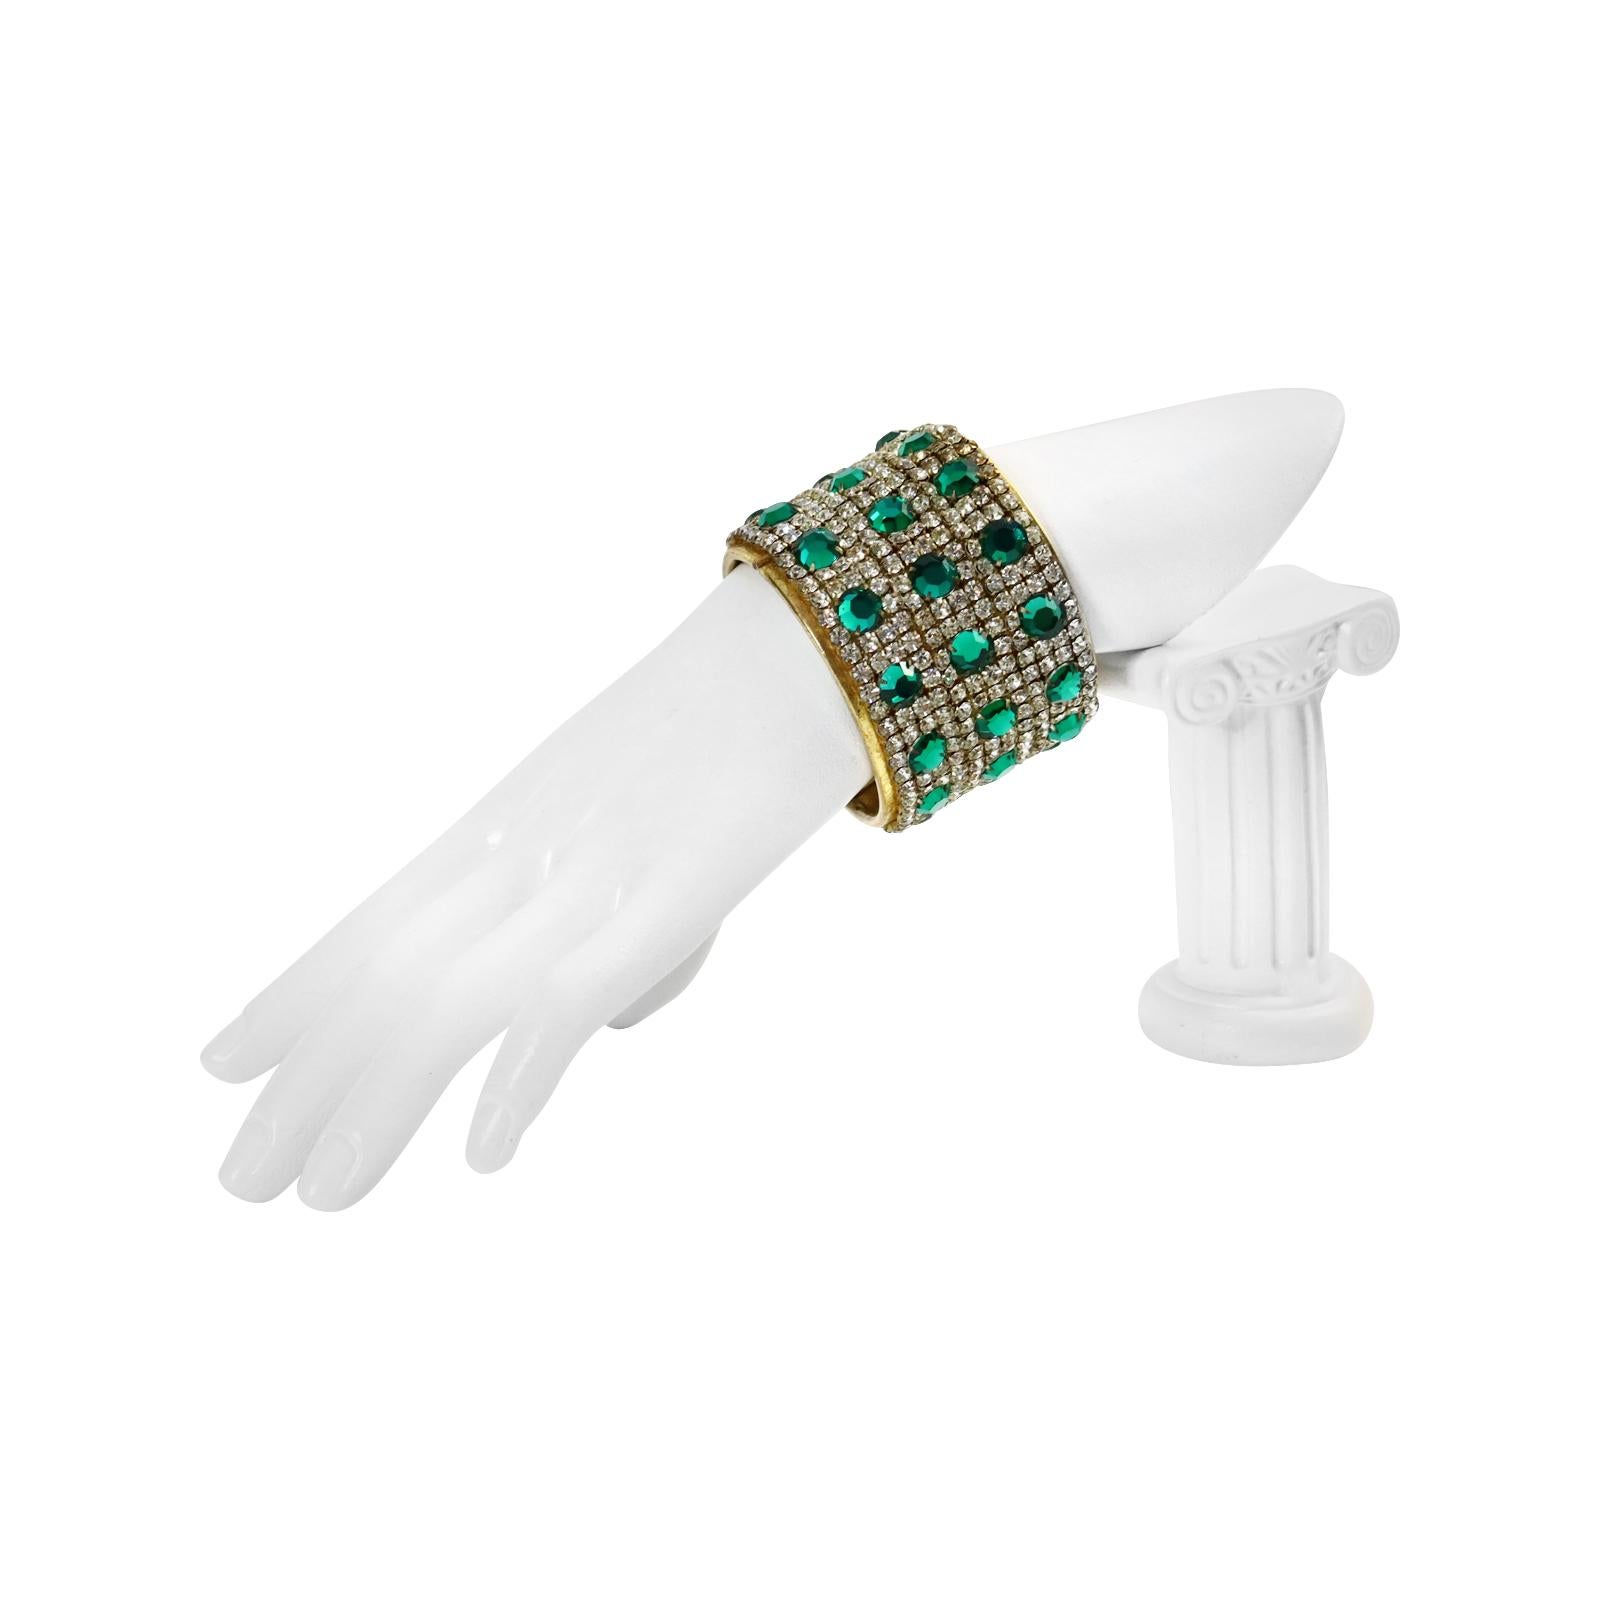 Vintage Miriam Haskell Diamante ton or et vert émeraude  Bracelet Circ des années 1950. Cette beauté est en très bon état pour son âge. Des rangées de cristaux clairs avec de grands cristaux vert émeraude sur un bracelet en or décoré. Très spécial.